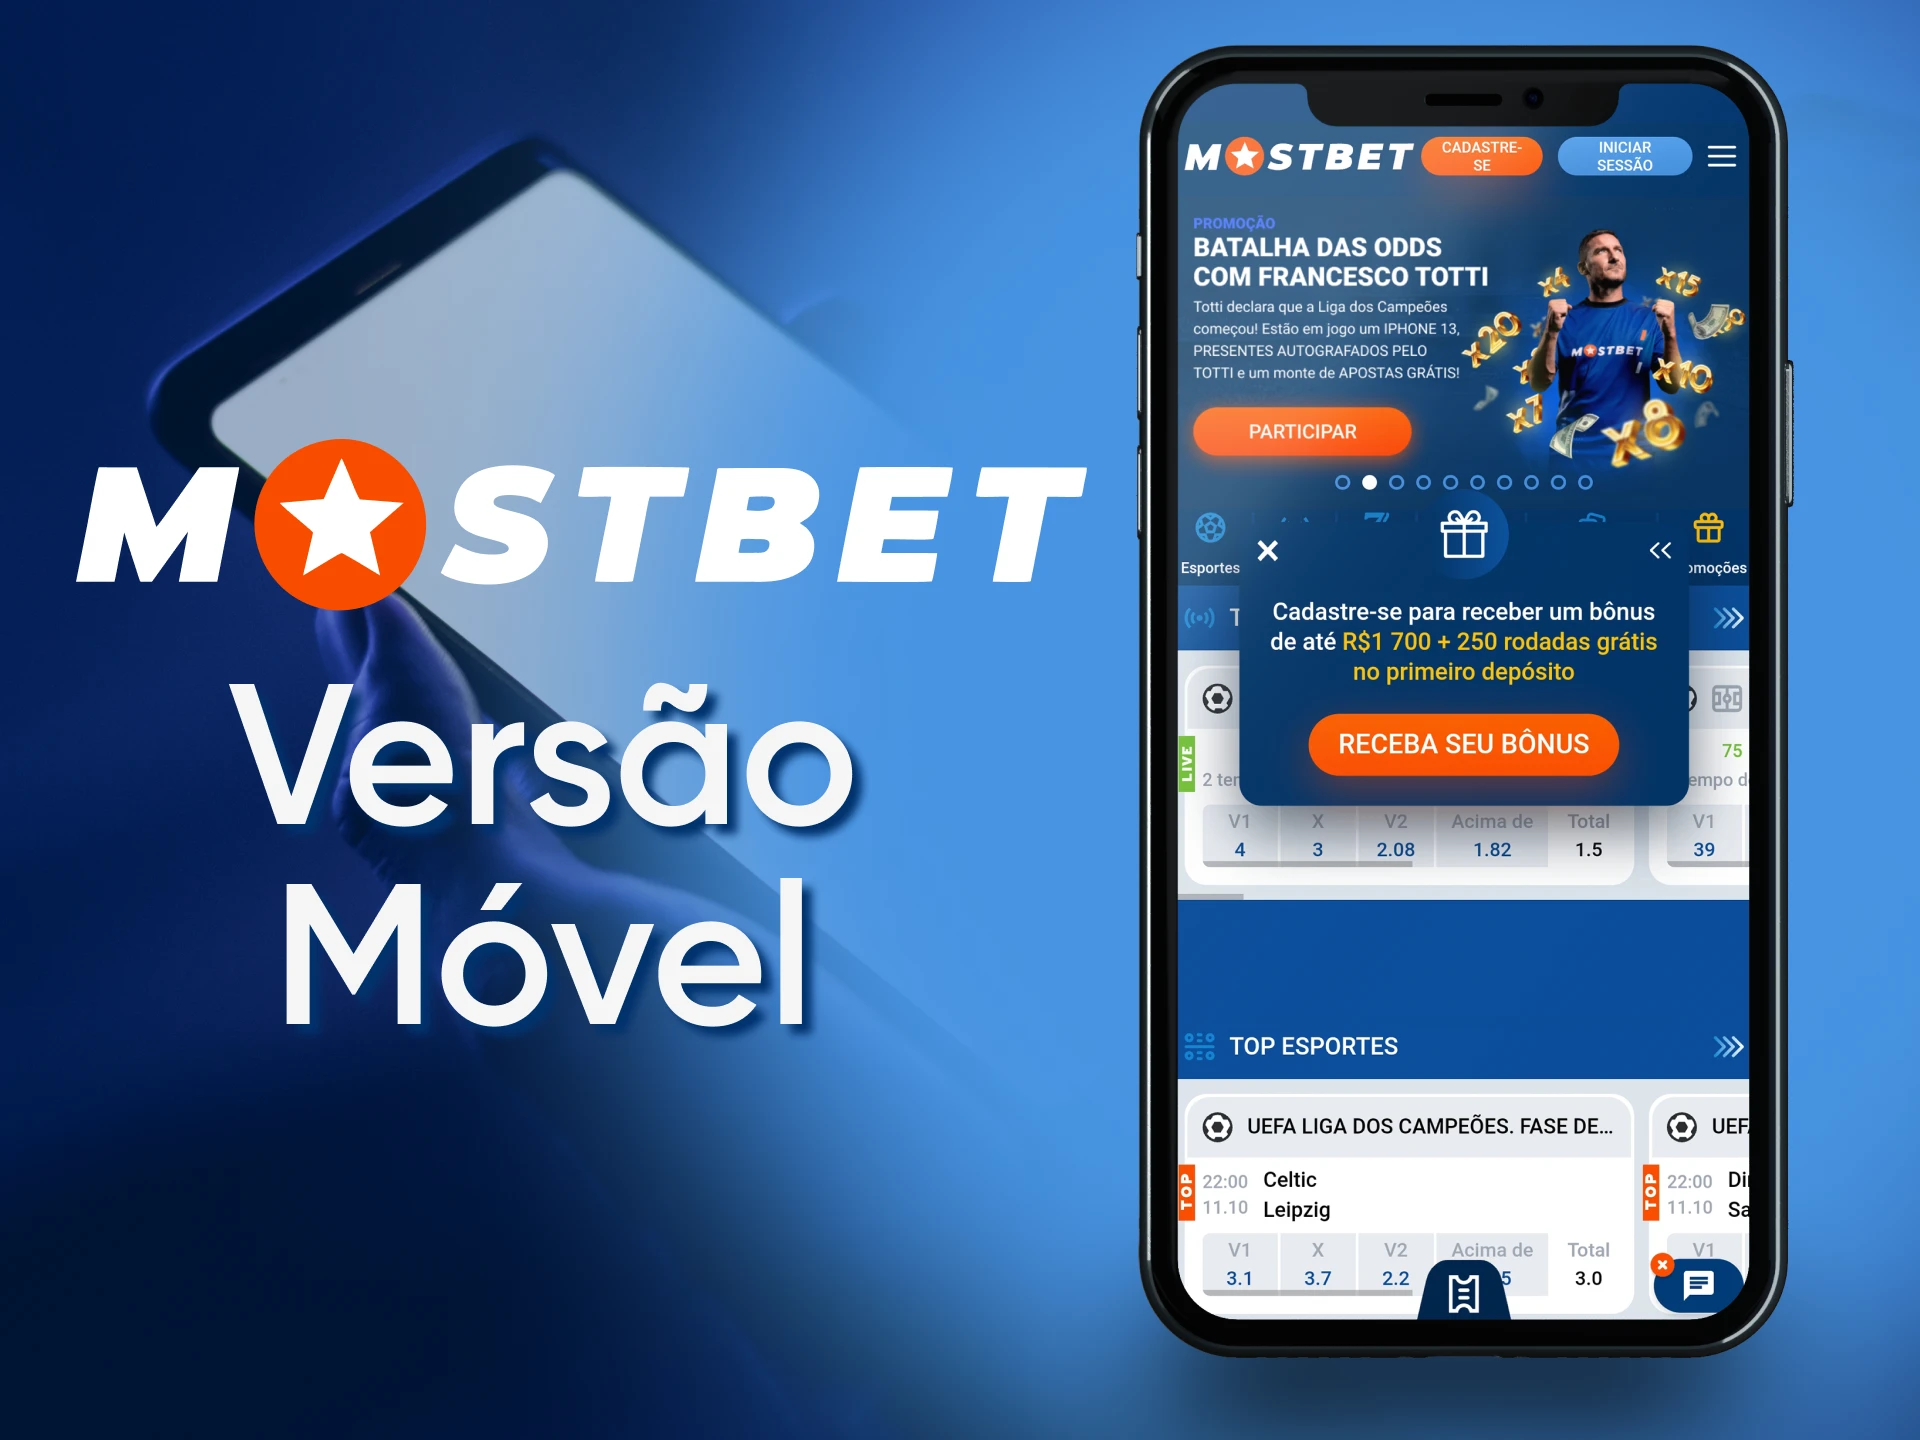 Используйте мобильный сайт Mostbet со своего устройства.